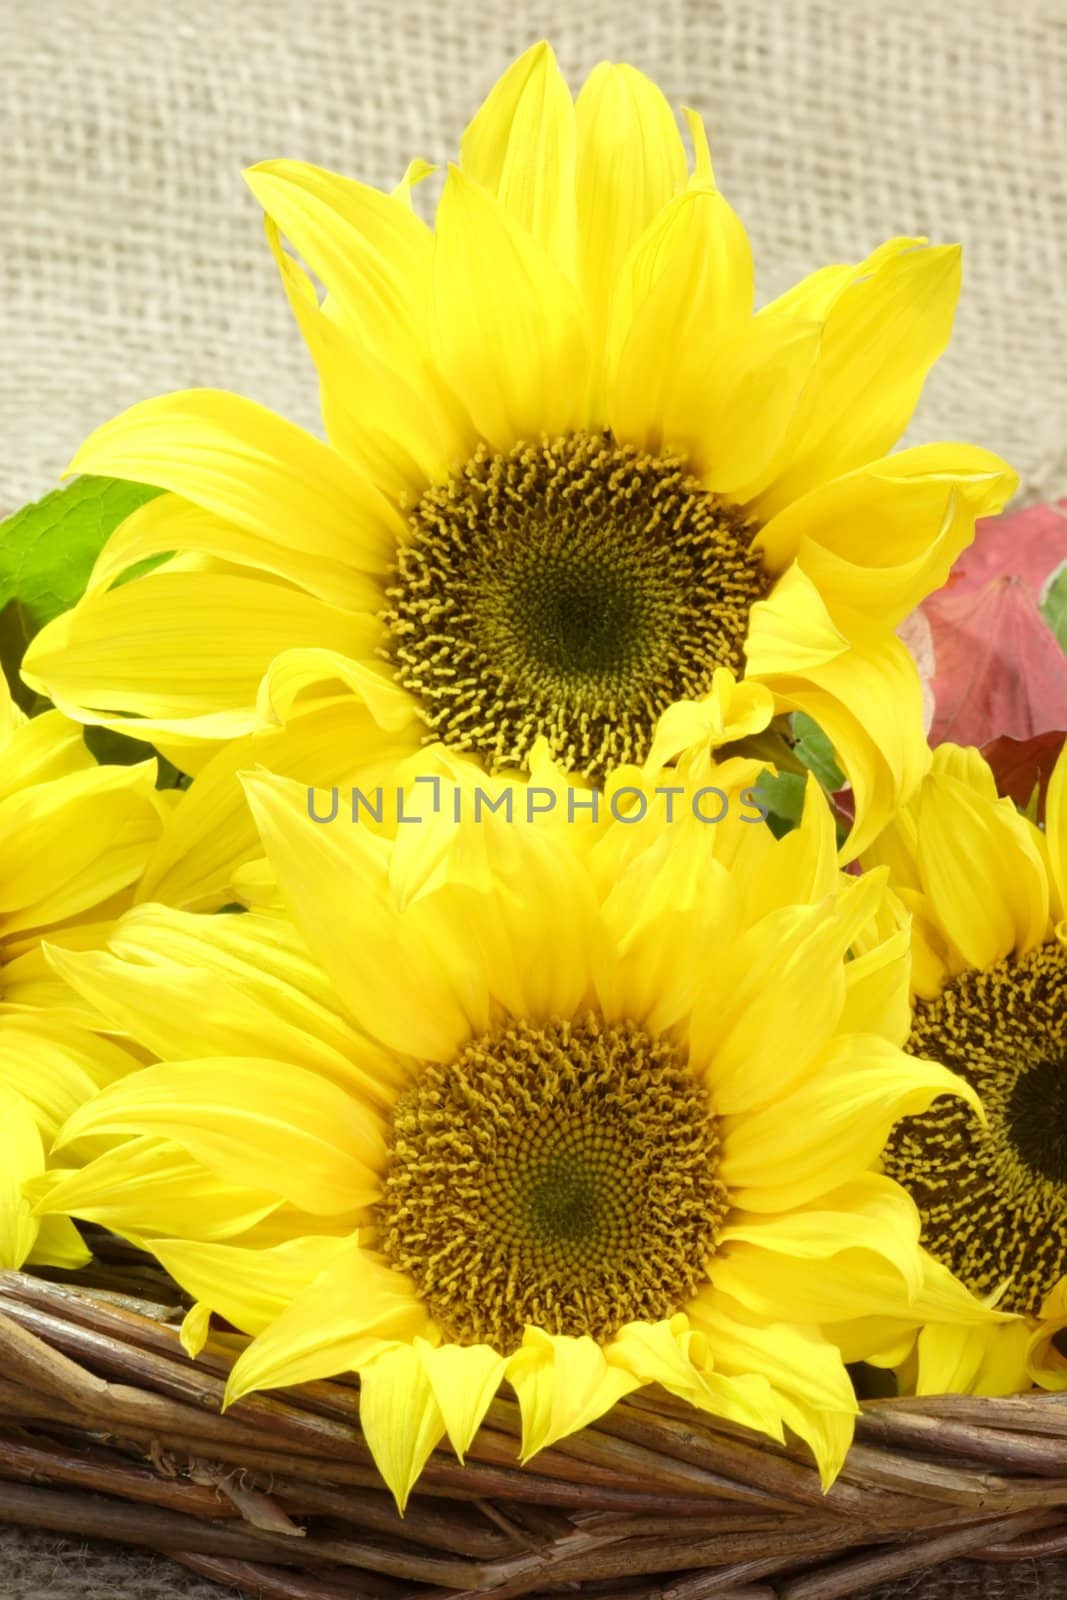 Sunflower Blooms by Teamarbeit